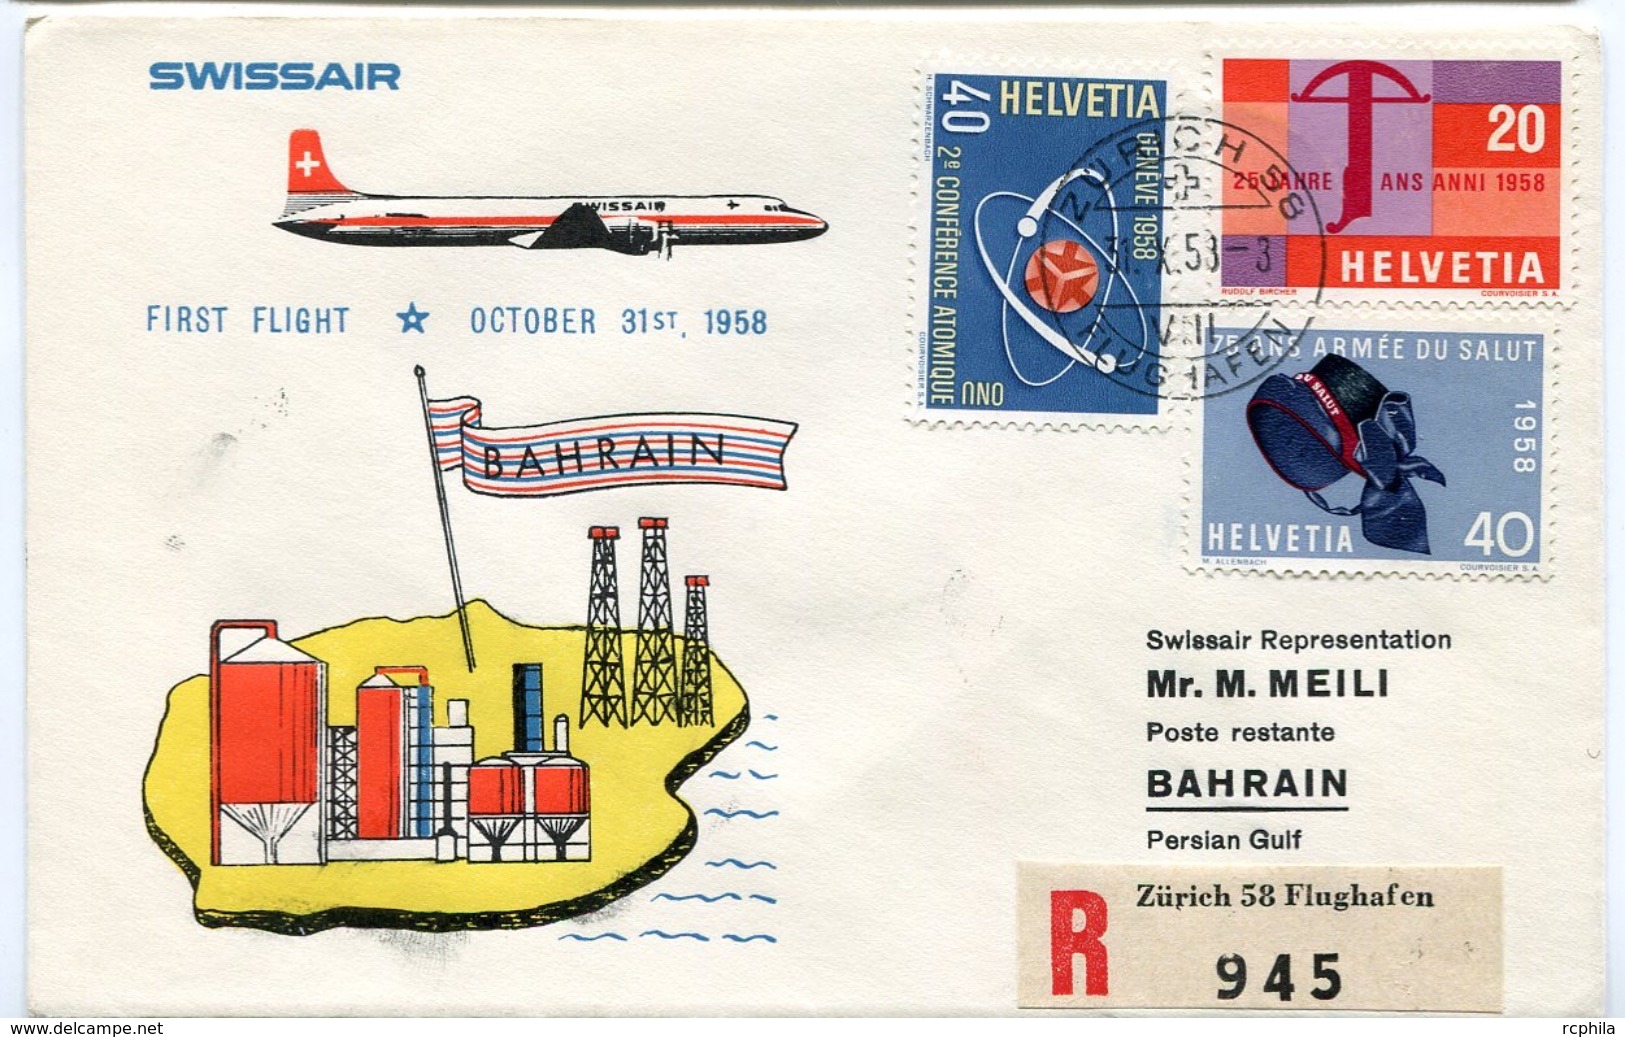 RC 6628 SUISSE 1958 1er VOL SWISSAIR ZURICH - BAHRAIN GULF PERSIQUE FFC LETTRE COVER - Erst- U. Sonderflugbriefe